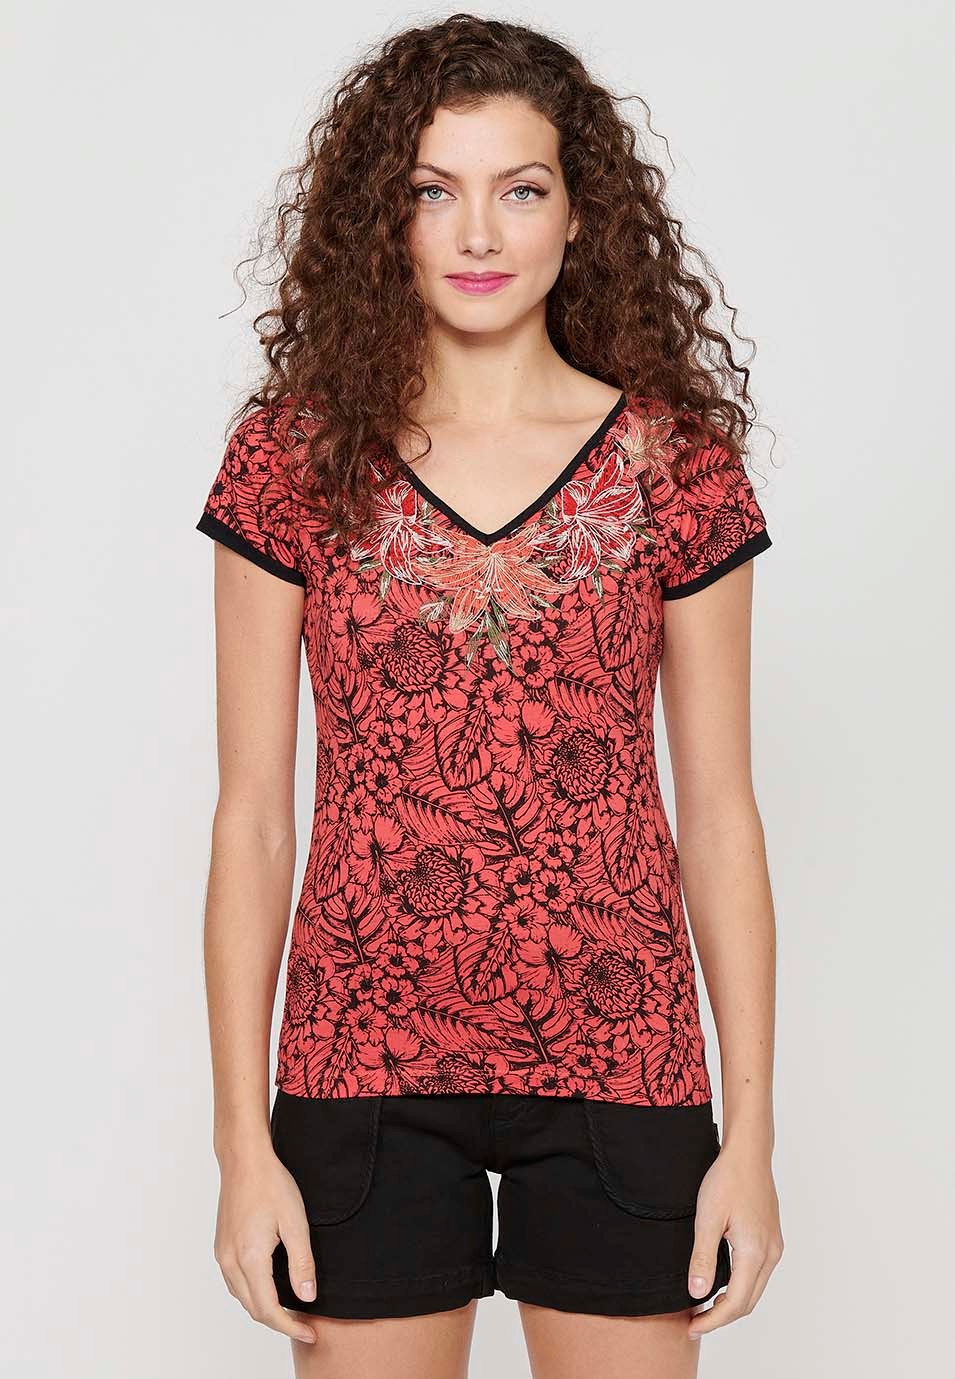 Camiseta de manga corta de Algodón con Cuello pico y Estampado floral con Detalles bordados de Color Coral para Mujer 1